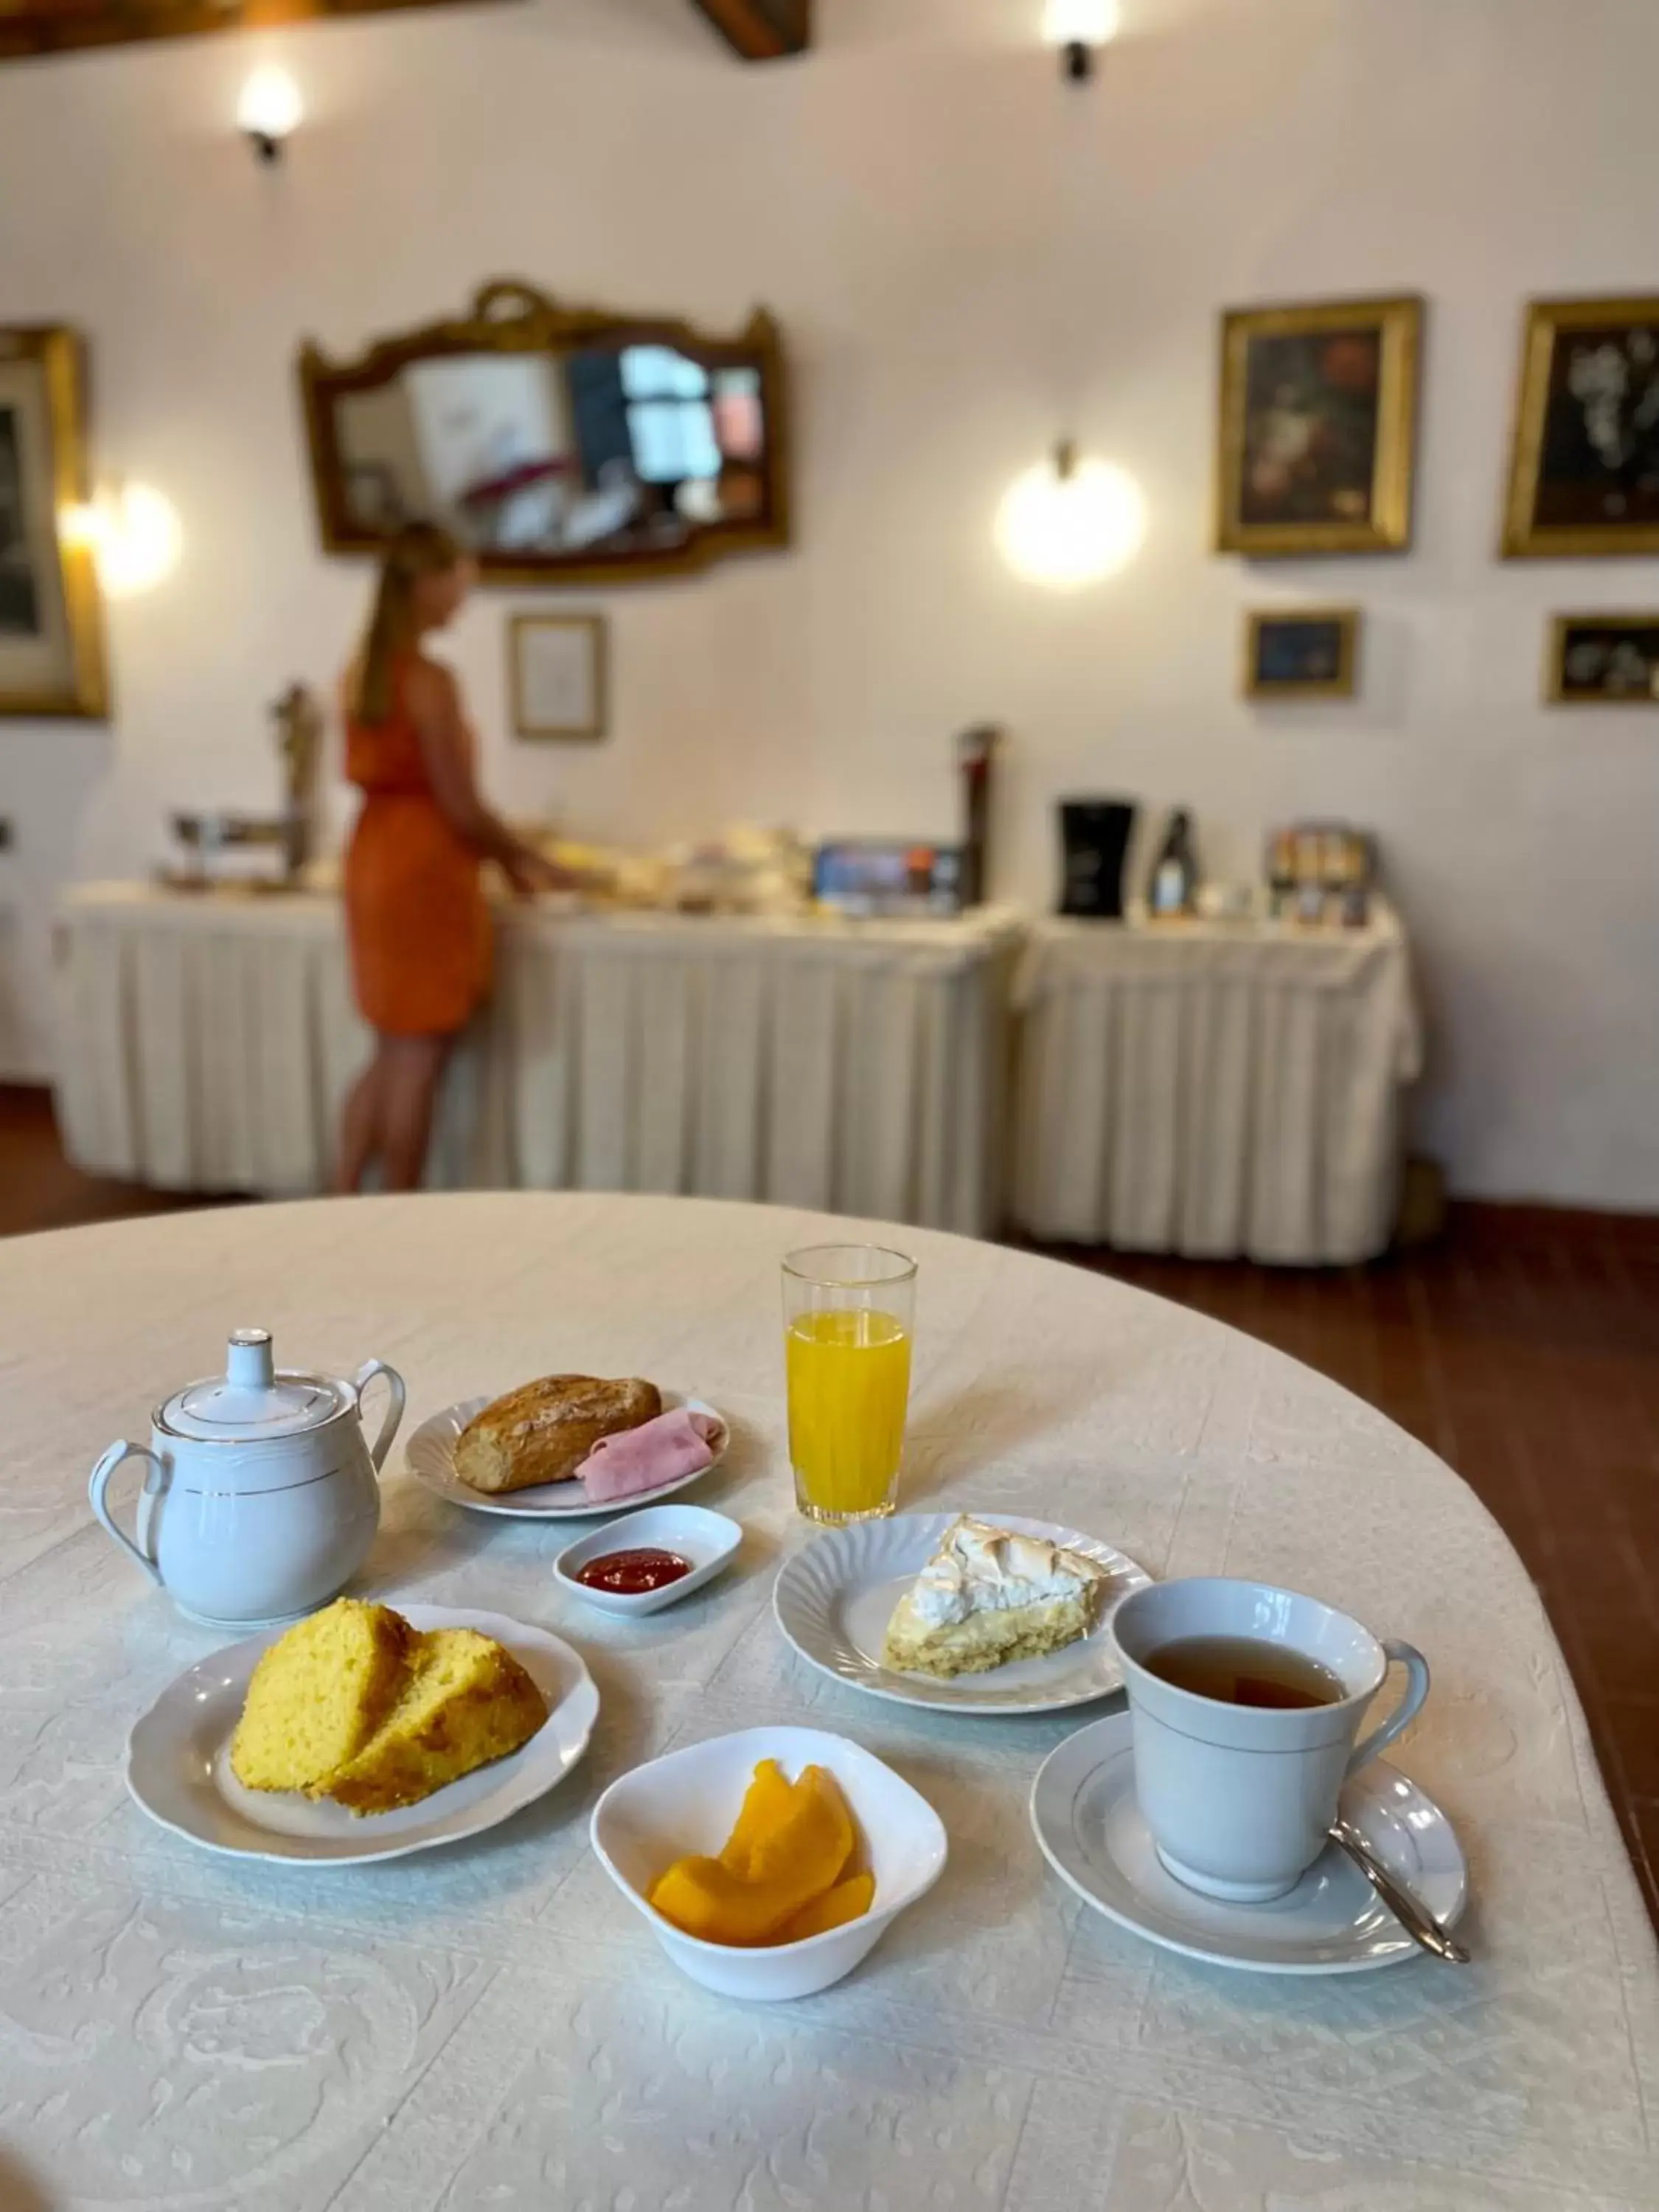 Buffet breakfast, Breakfast in El Hotel de Su Merced